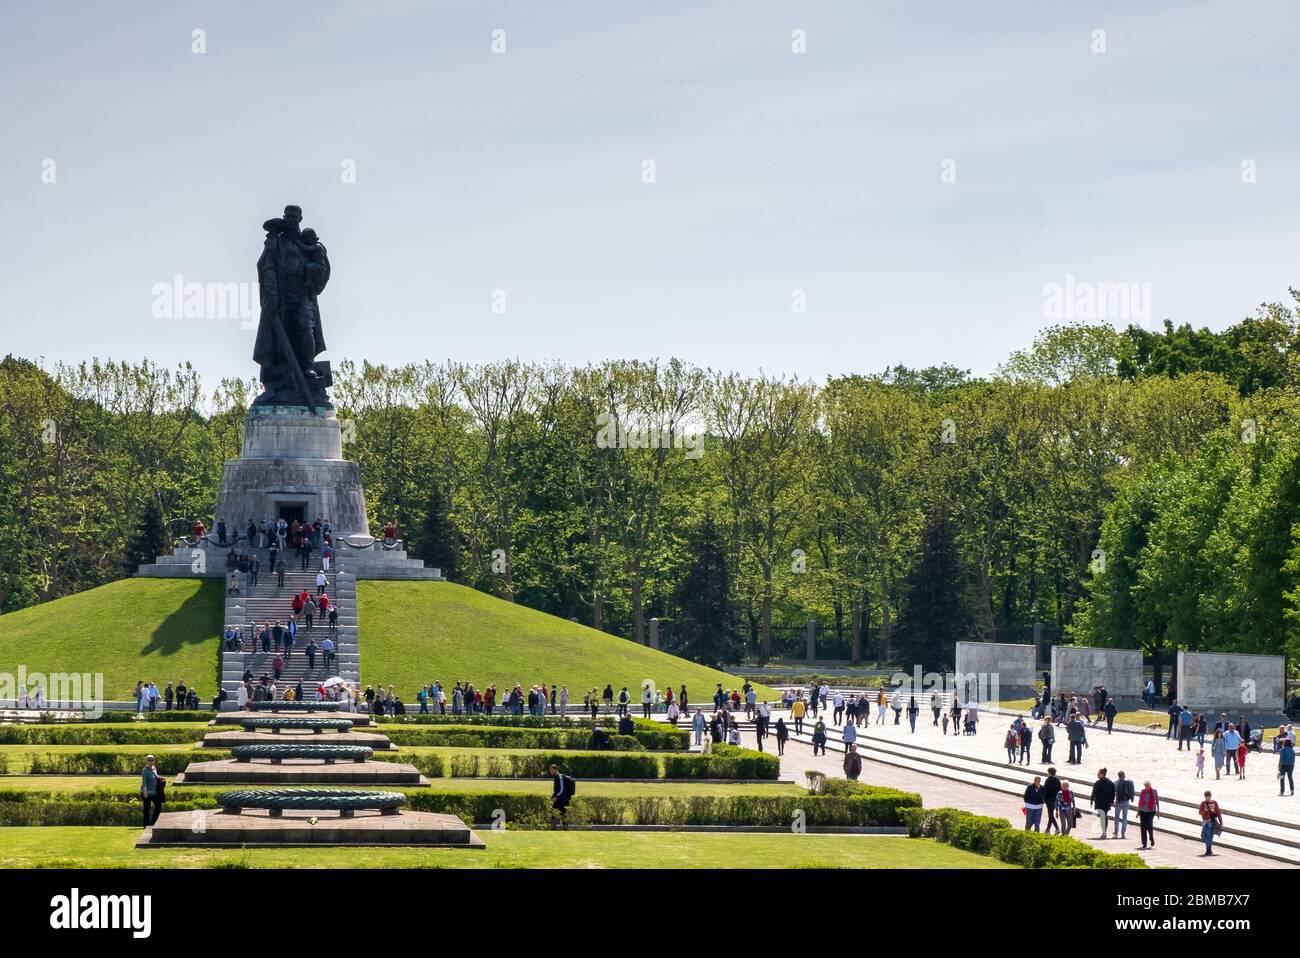 Berlin, Allemagne. 8 mai 2020. Les foules se rassemblent au mémorial de guerre soviétique dans le parc Treptower pour marquer le 75e anniversaire de la fin de la Seconde Guerre mondiale. Crédit : David Crossland/Alay Live News Banque D'Images